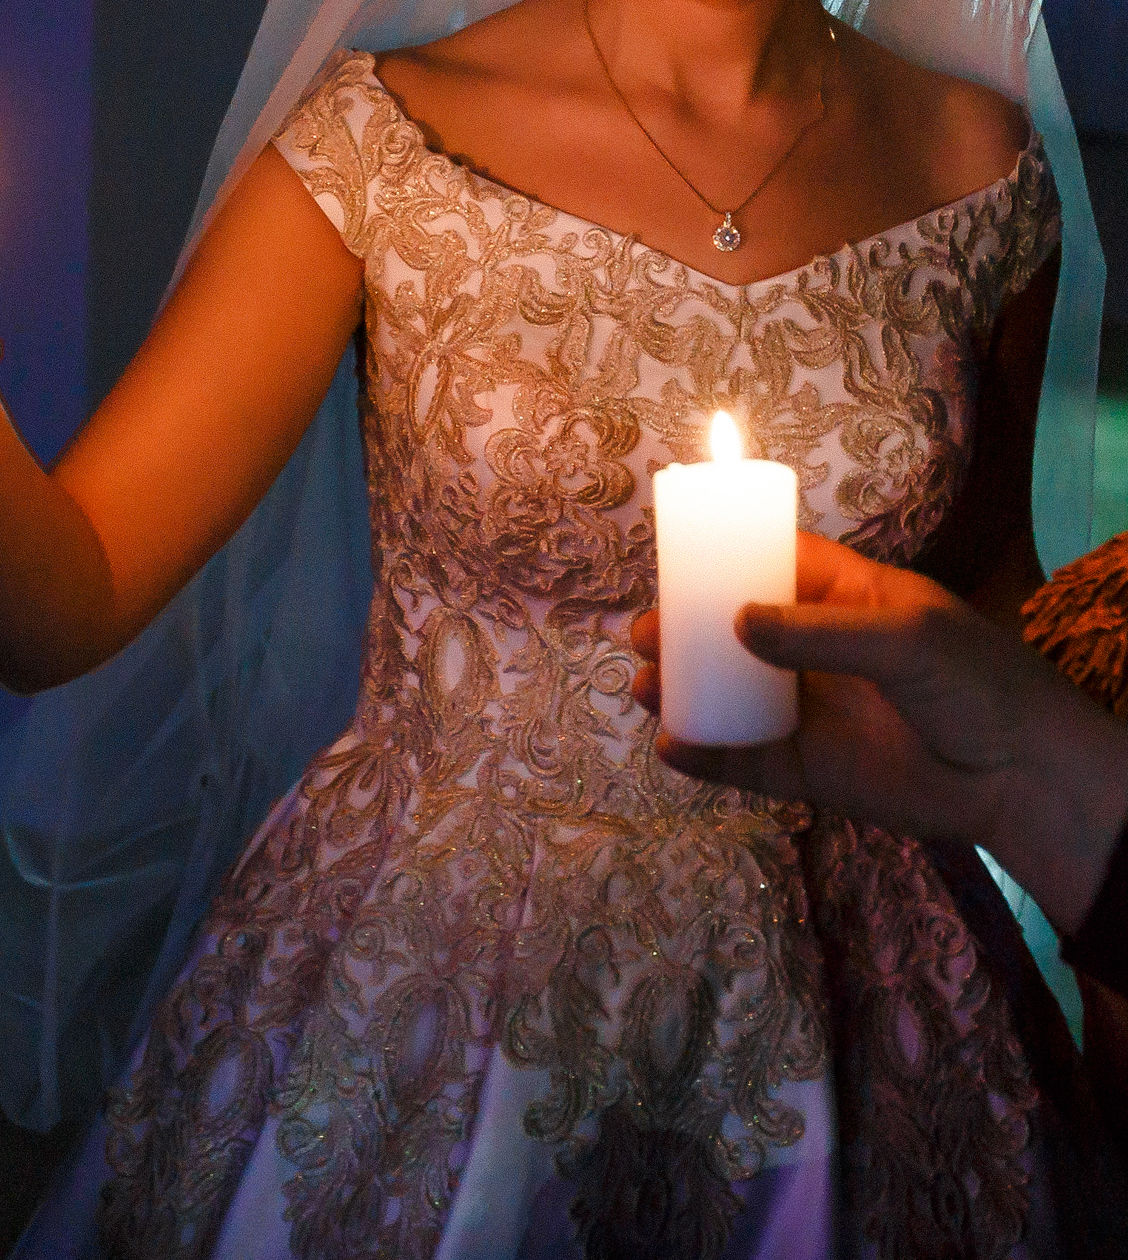 Сжечь свадебное платье